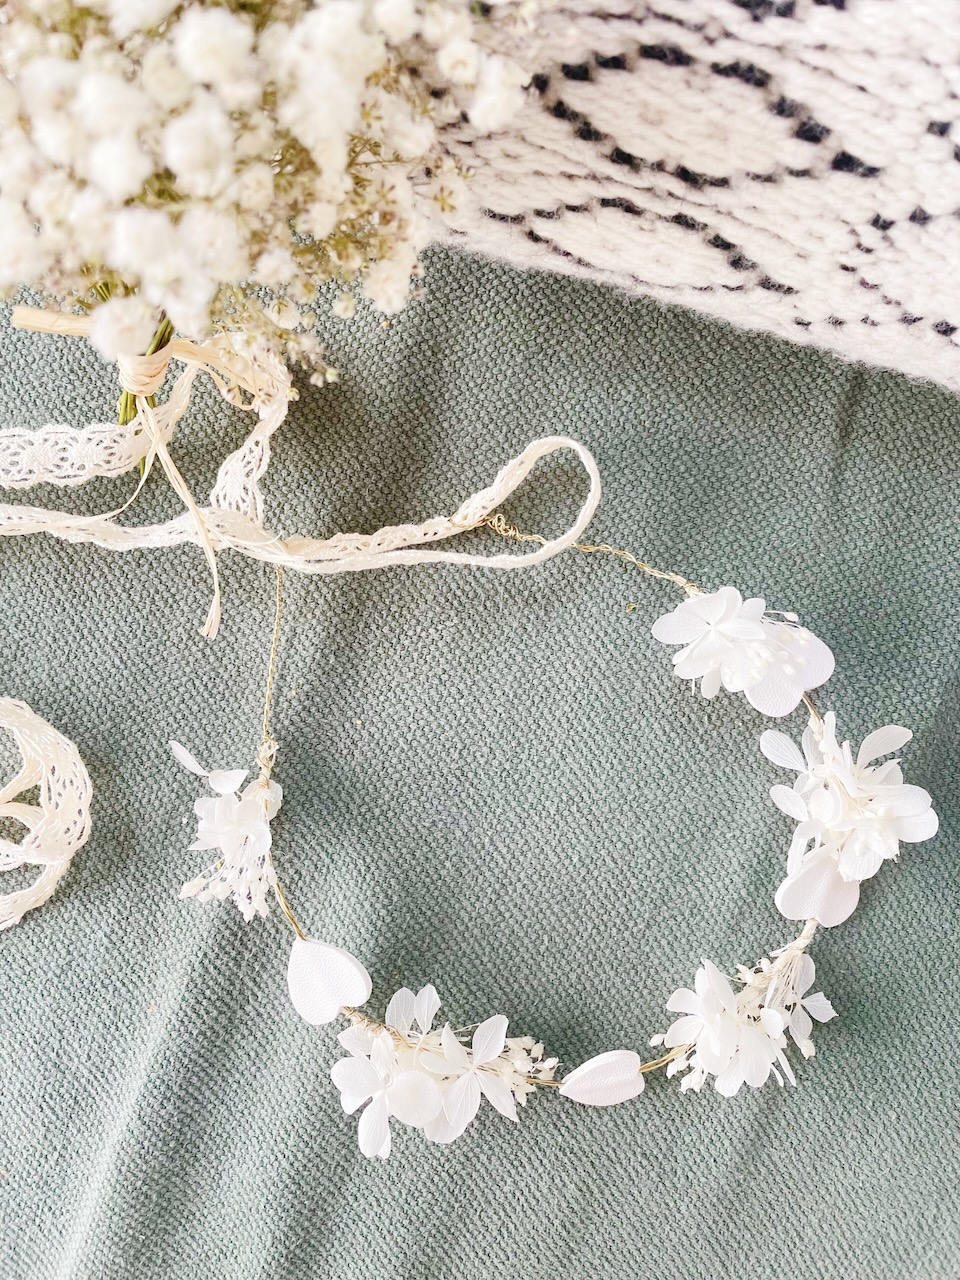 couronne de fleurs séchées et préservées hortensia blanche ivoire rose pâle sur fil de laiton fabriqué en France © du vent dans mes valises 10